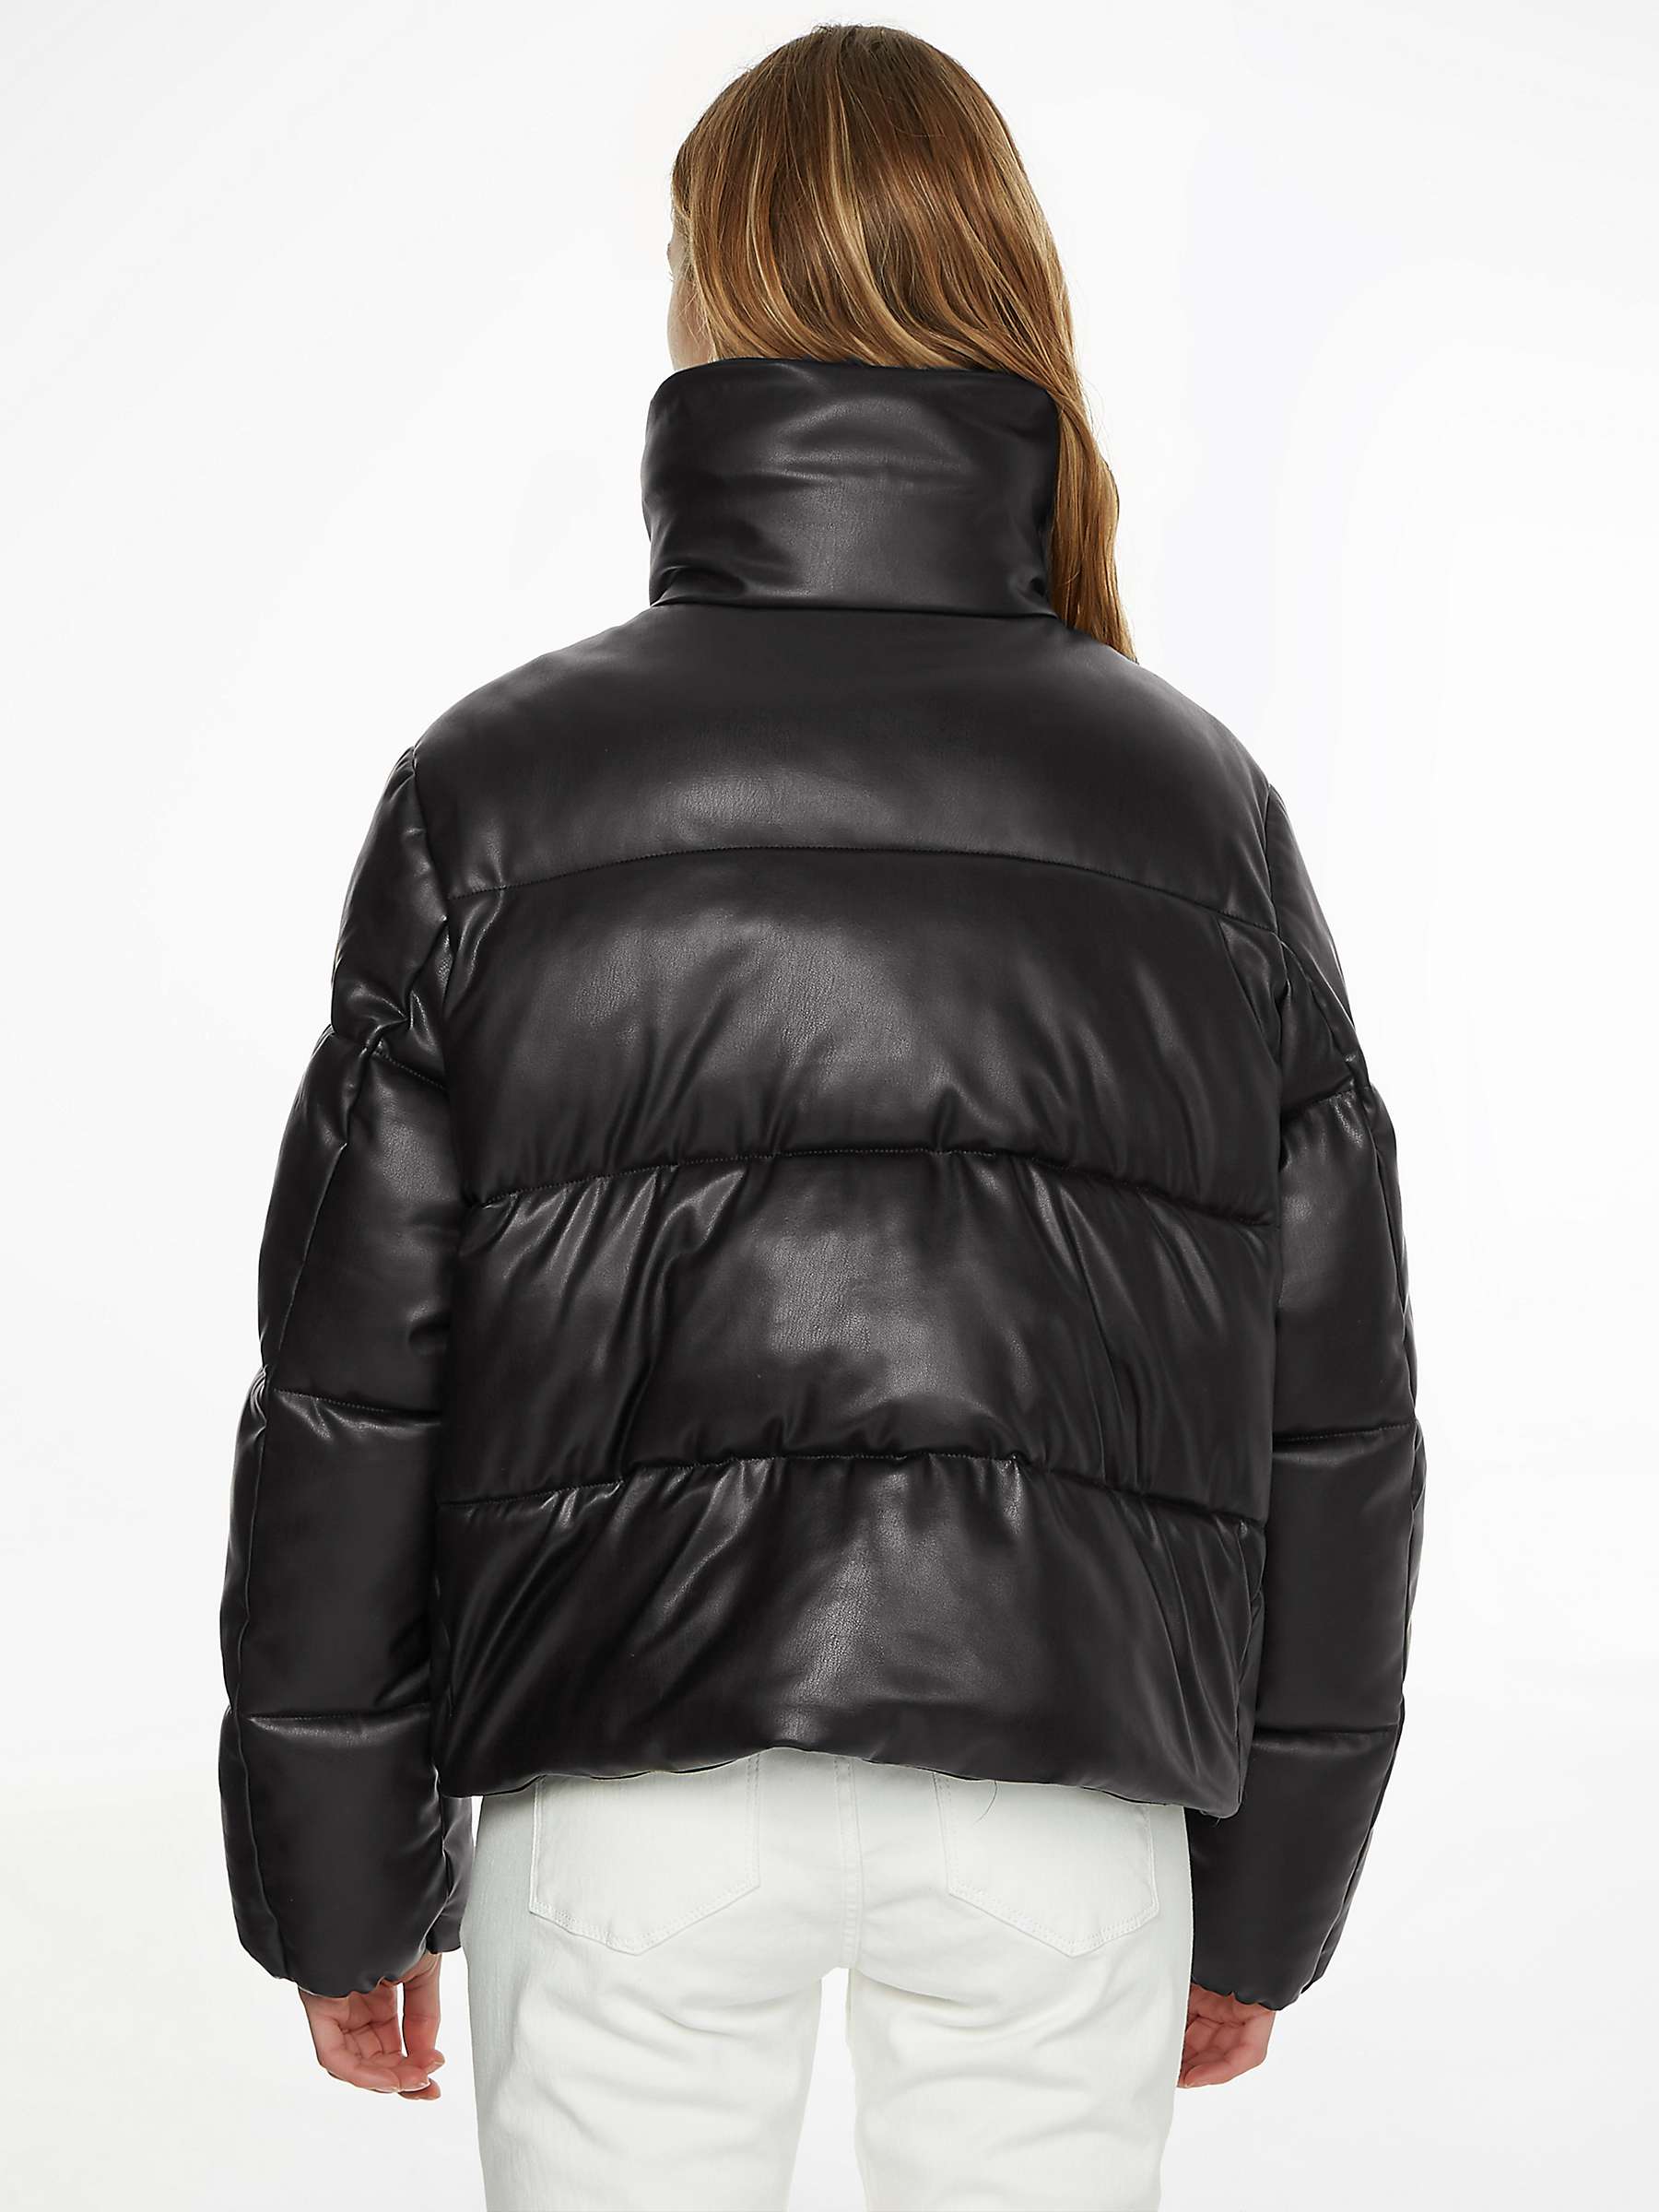 Calvin Klein Padded Puffer Jacket, CK Black at John Lewis & Partners